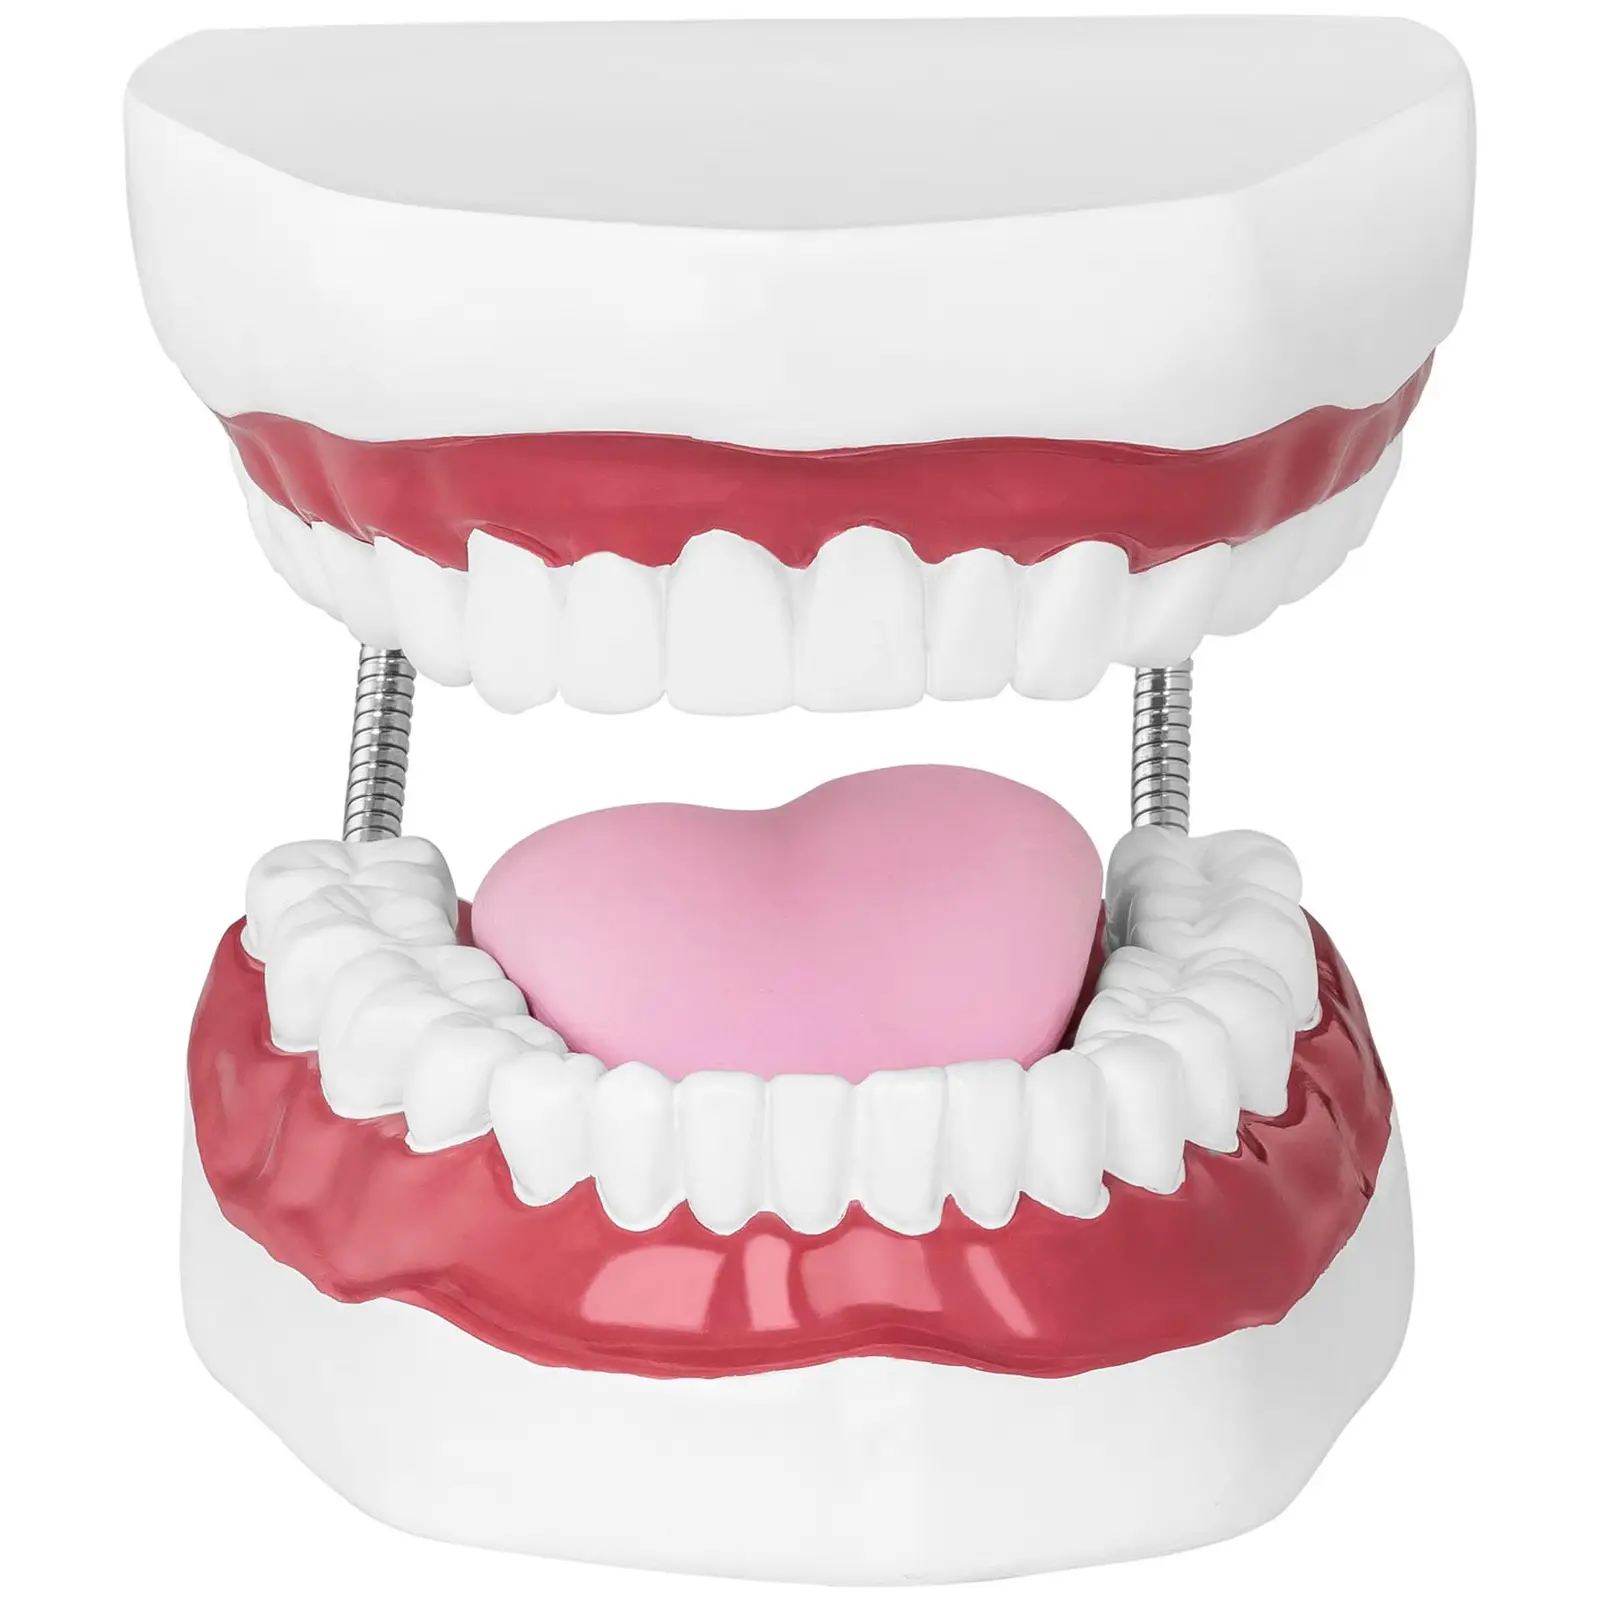 Teeth Model - Set of Teeth